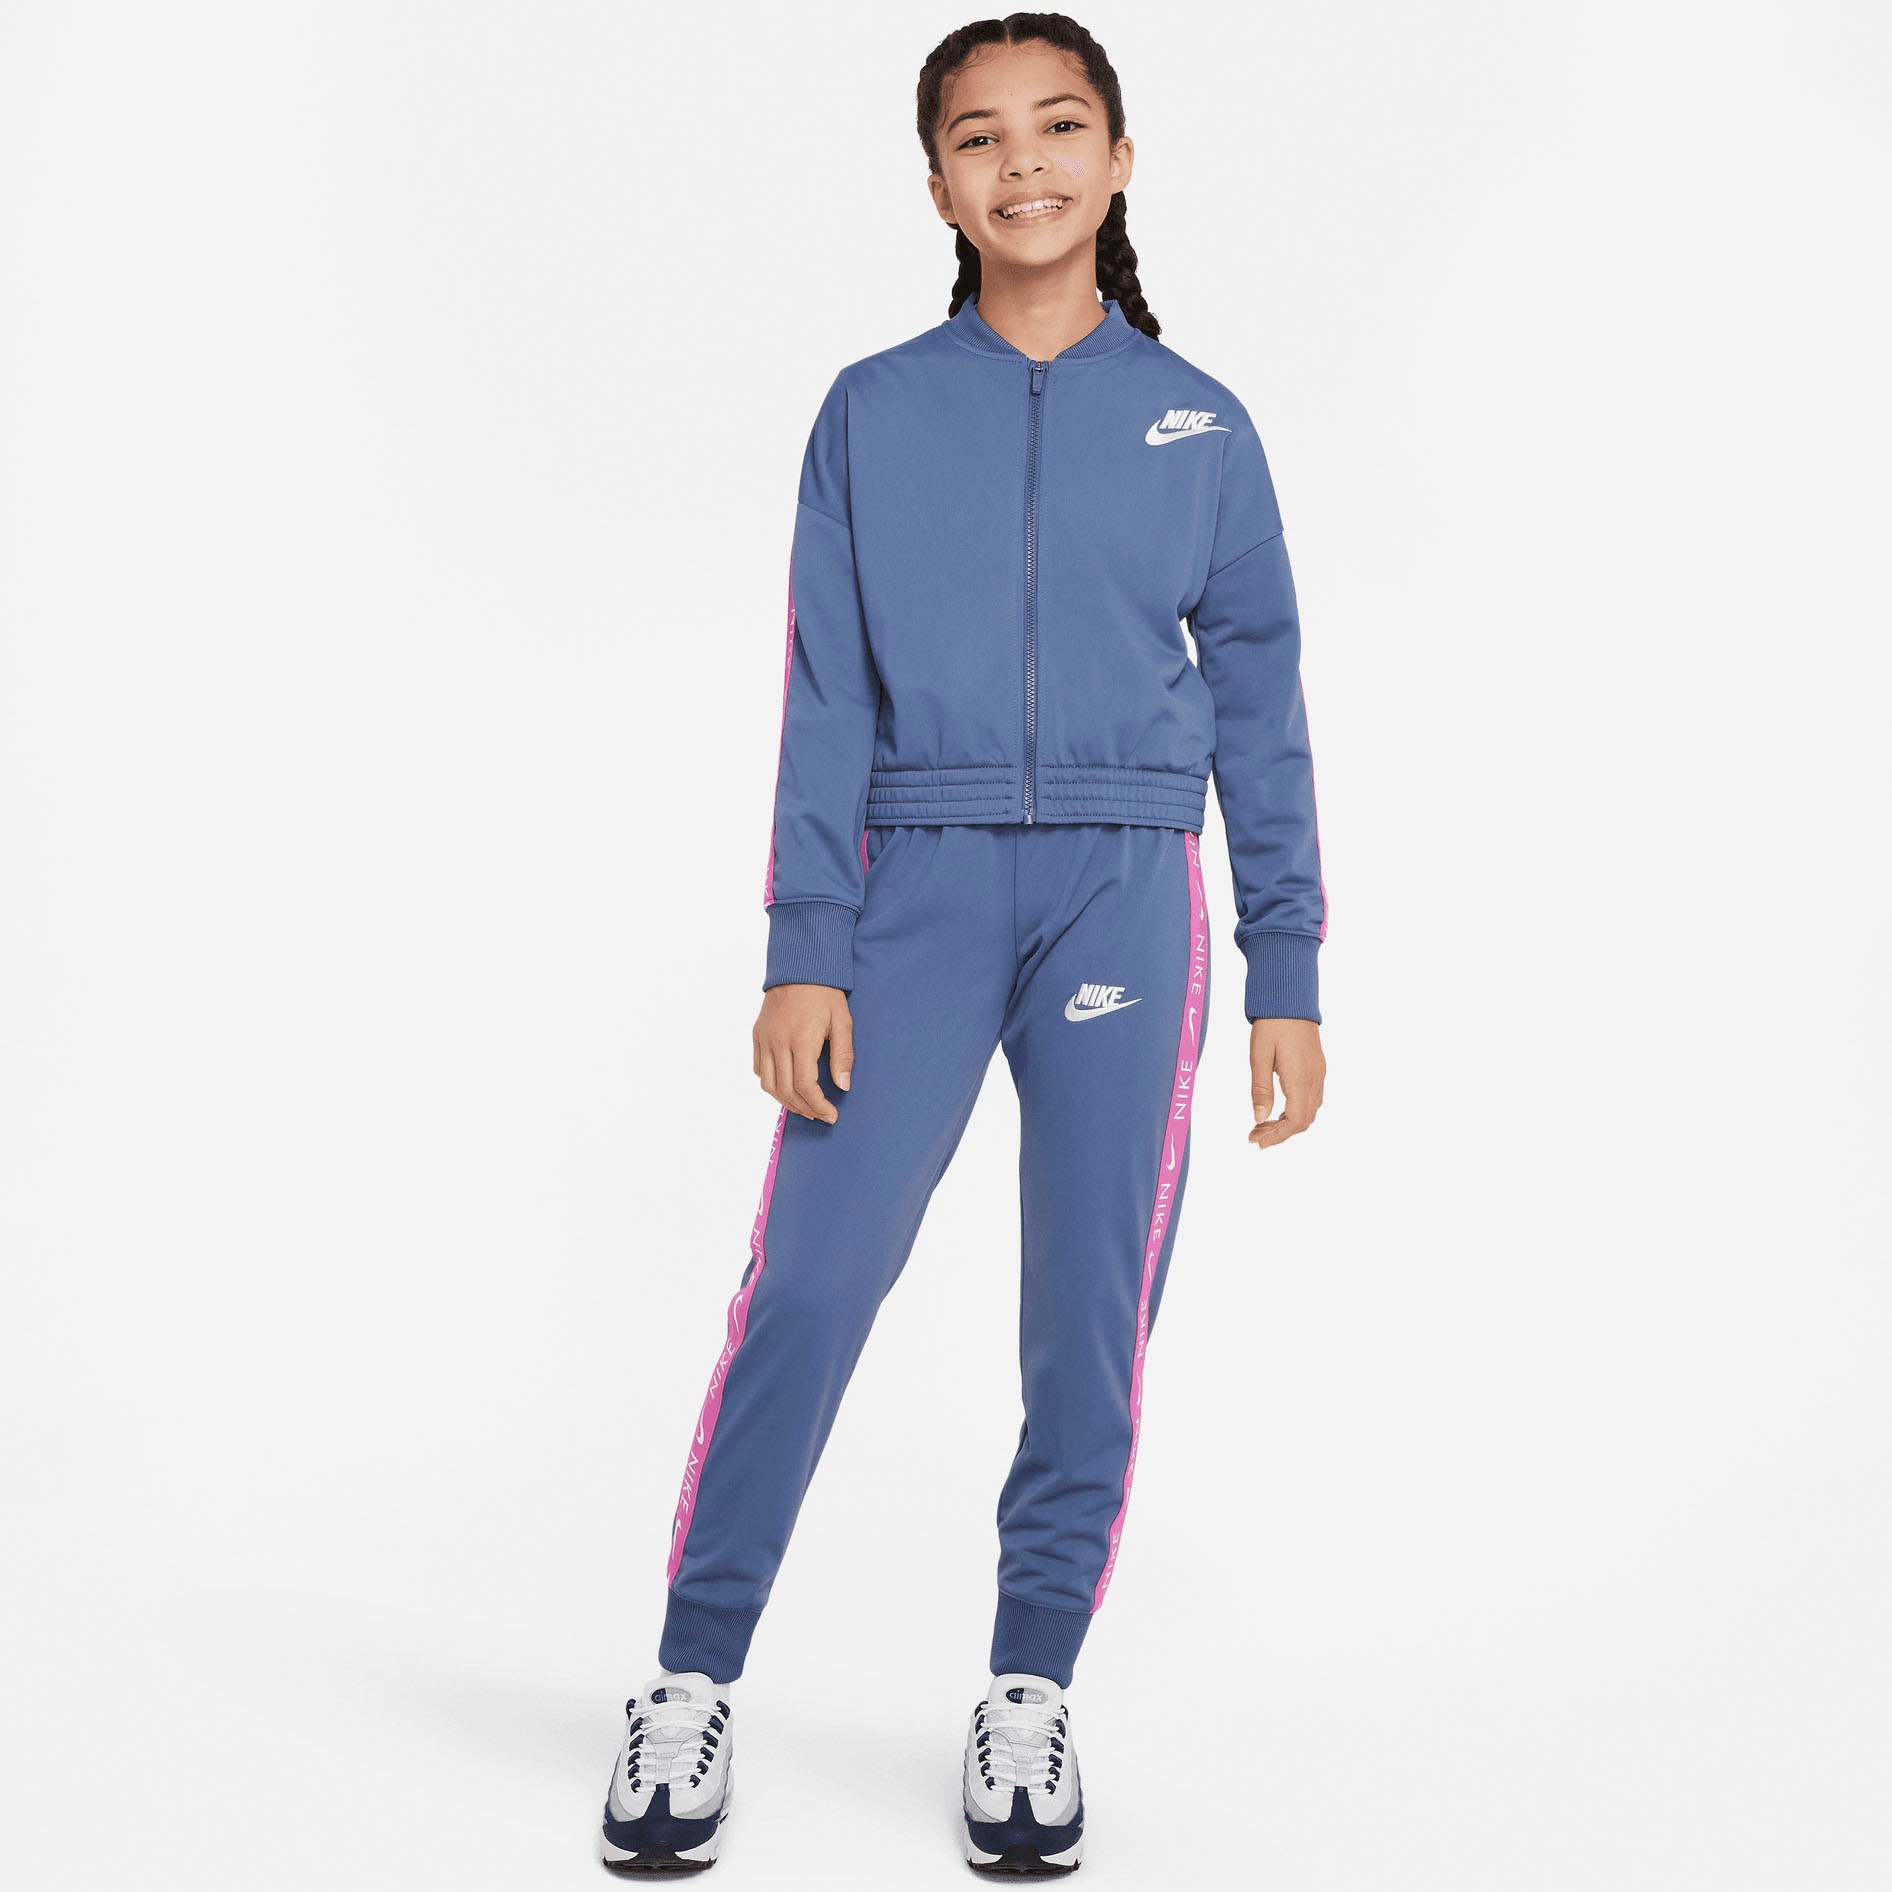 Modische Nike »Big Tracksuit« Sportswear bestellen Trainingsanzug ohne Mindestbestellwert Kids